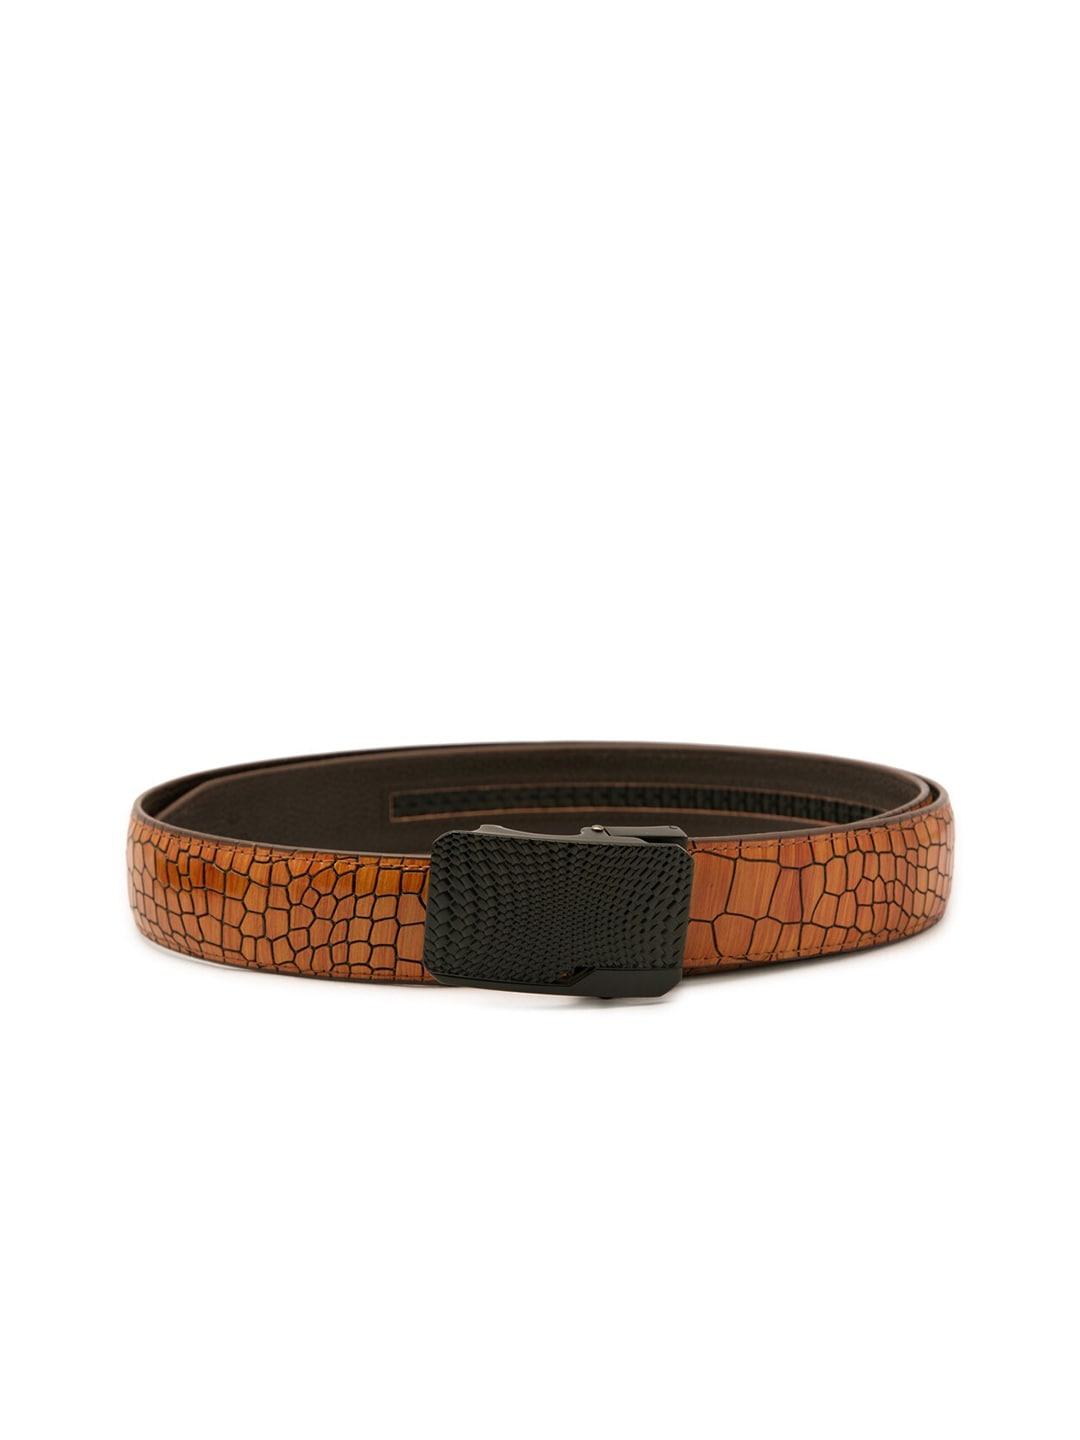 bange men orange textured leather formal belt